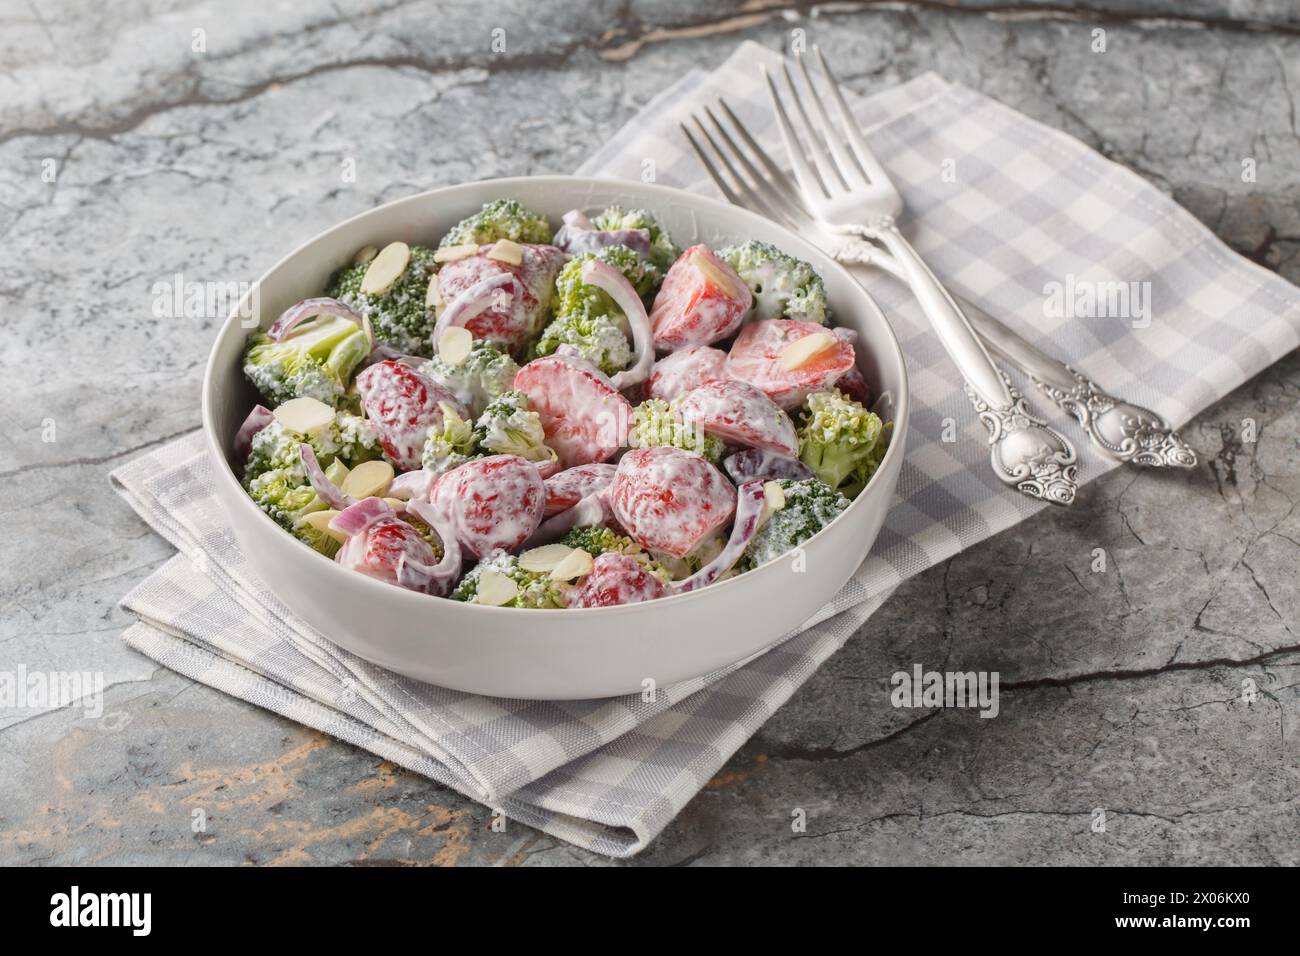 Salade de brocoli avec fraises fraîches, oignon rouge, amandes et yaourt grec gros plan dans une assiette sur la table. Horizontal Banque D'Images